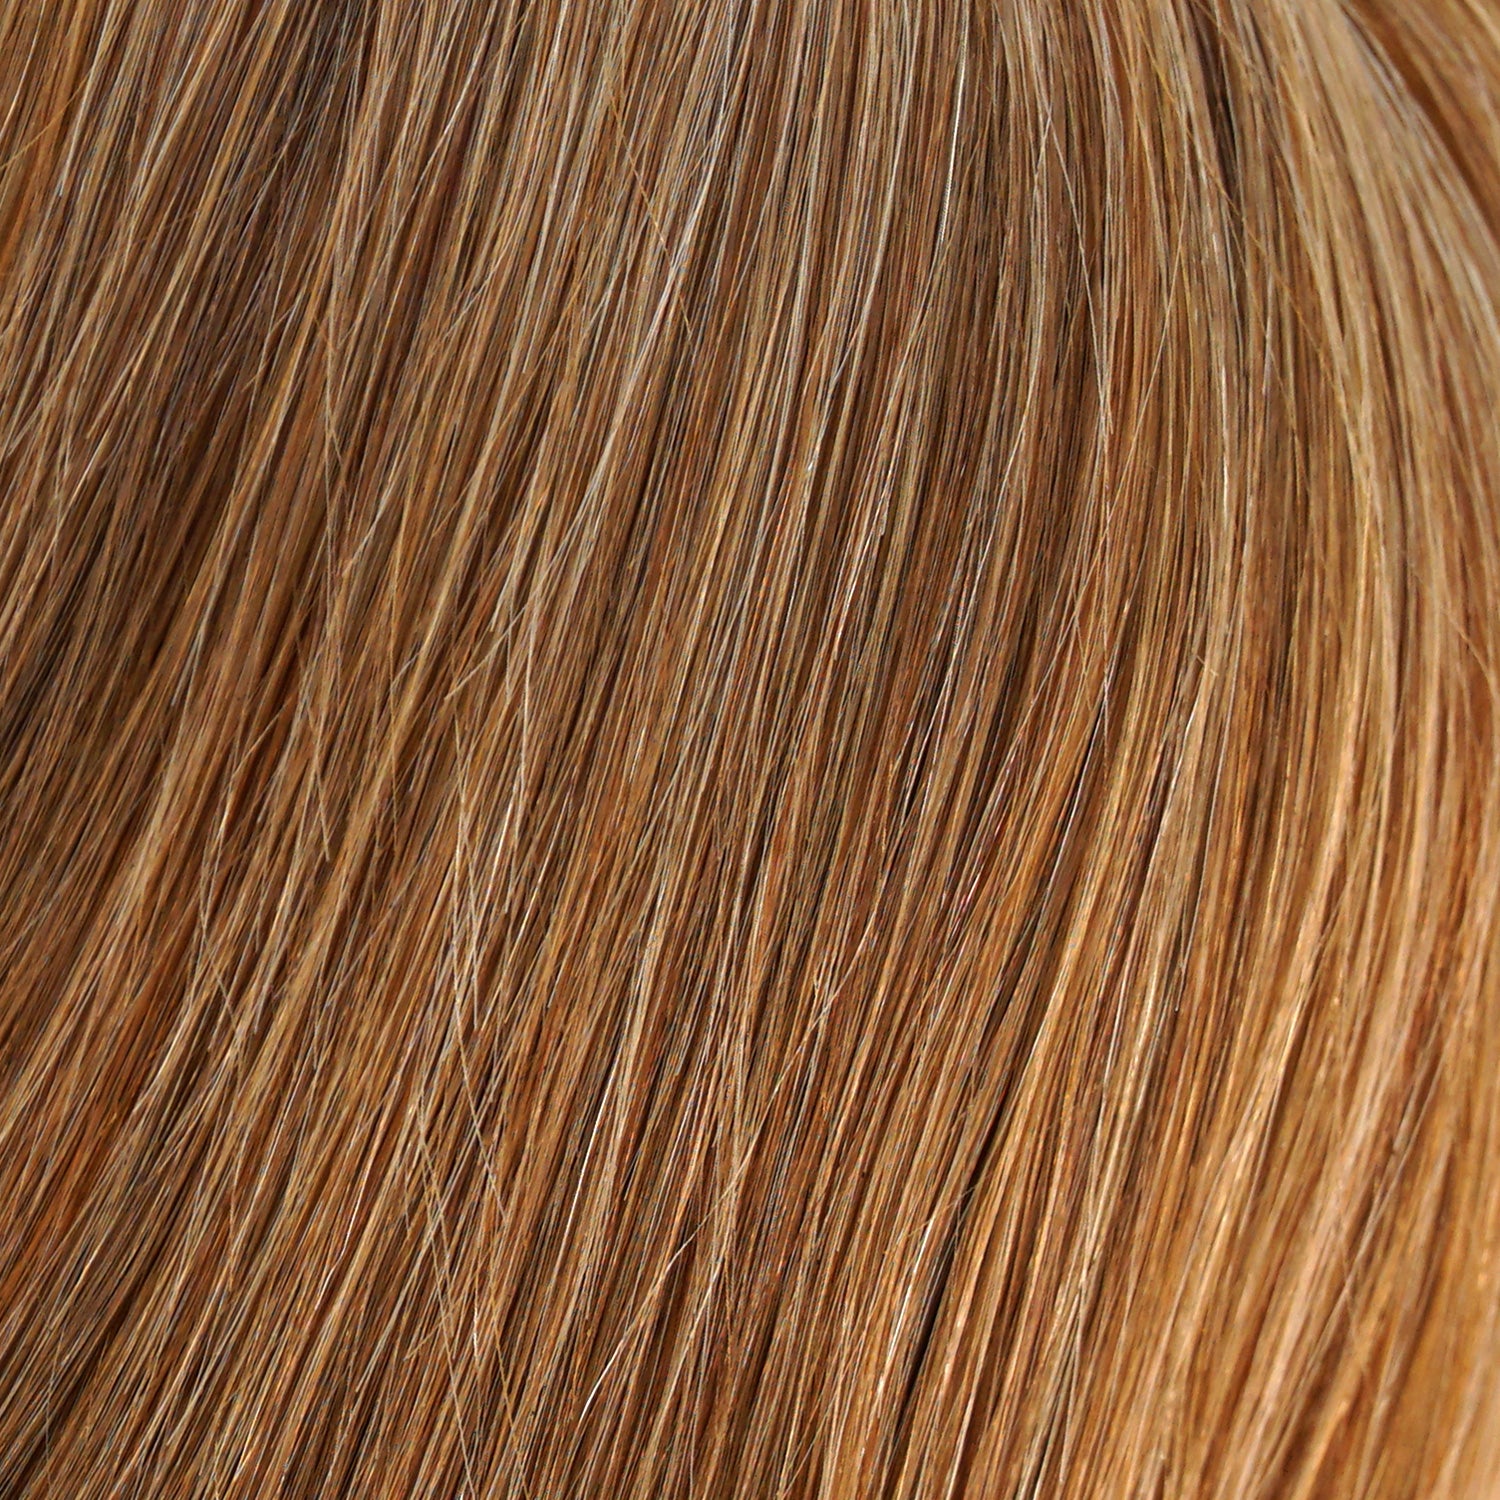 Perruque Cheveux Naturels Blonds Jon Renau Sophia Couleur 14-26